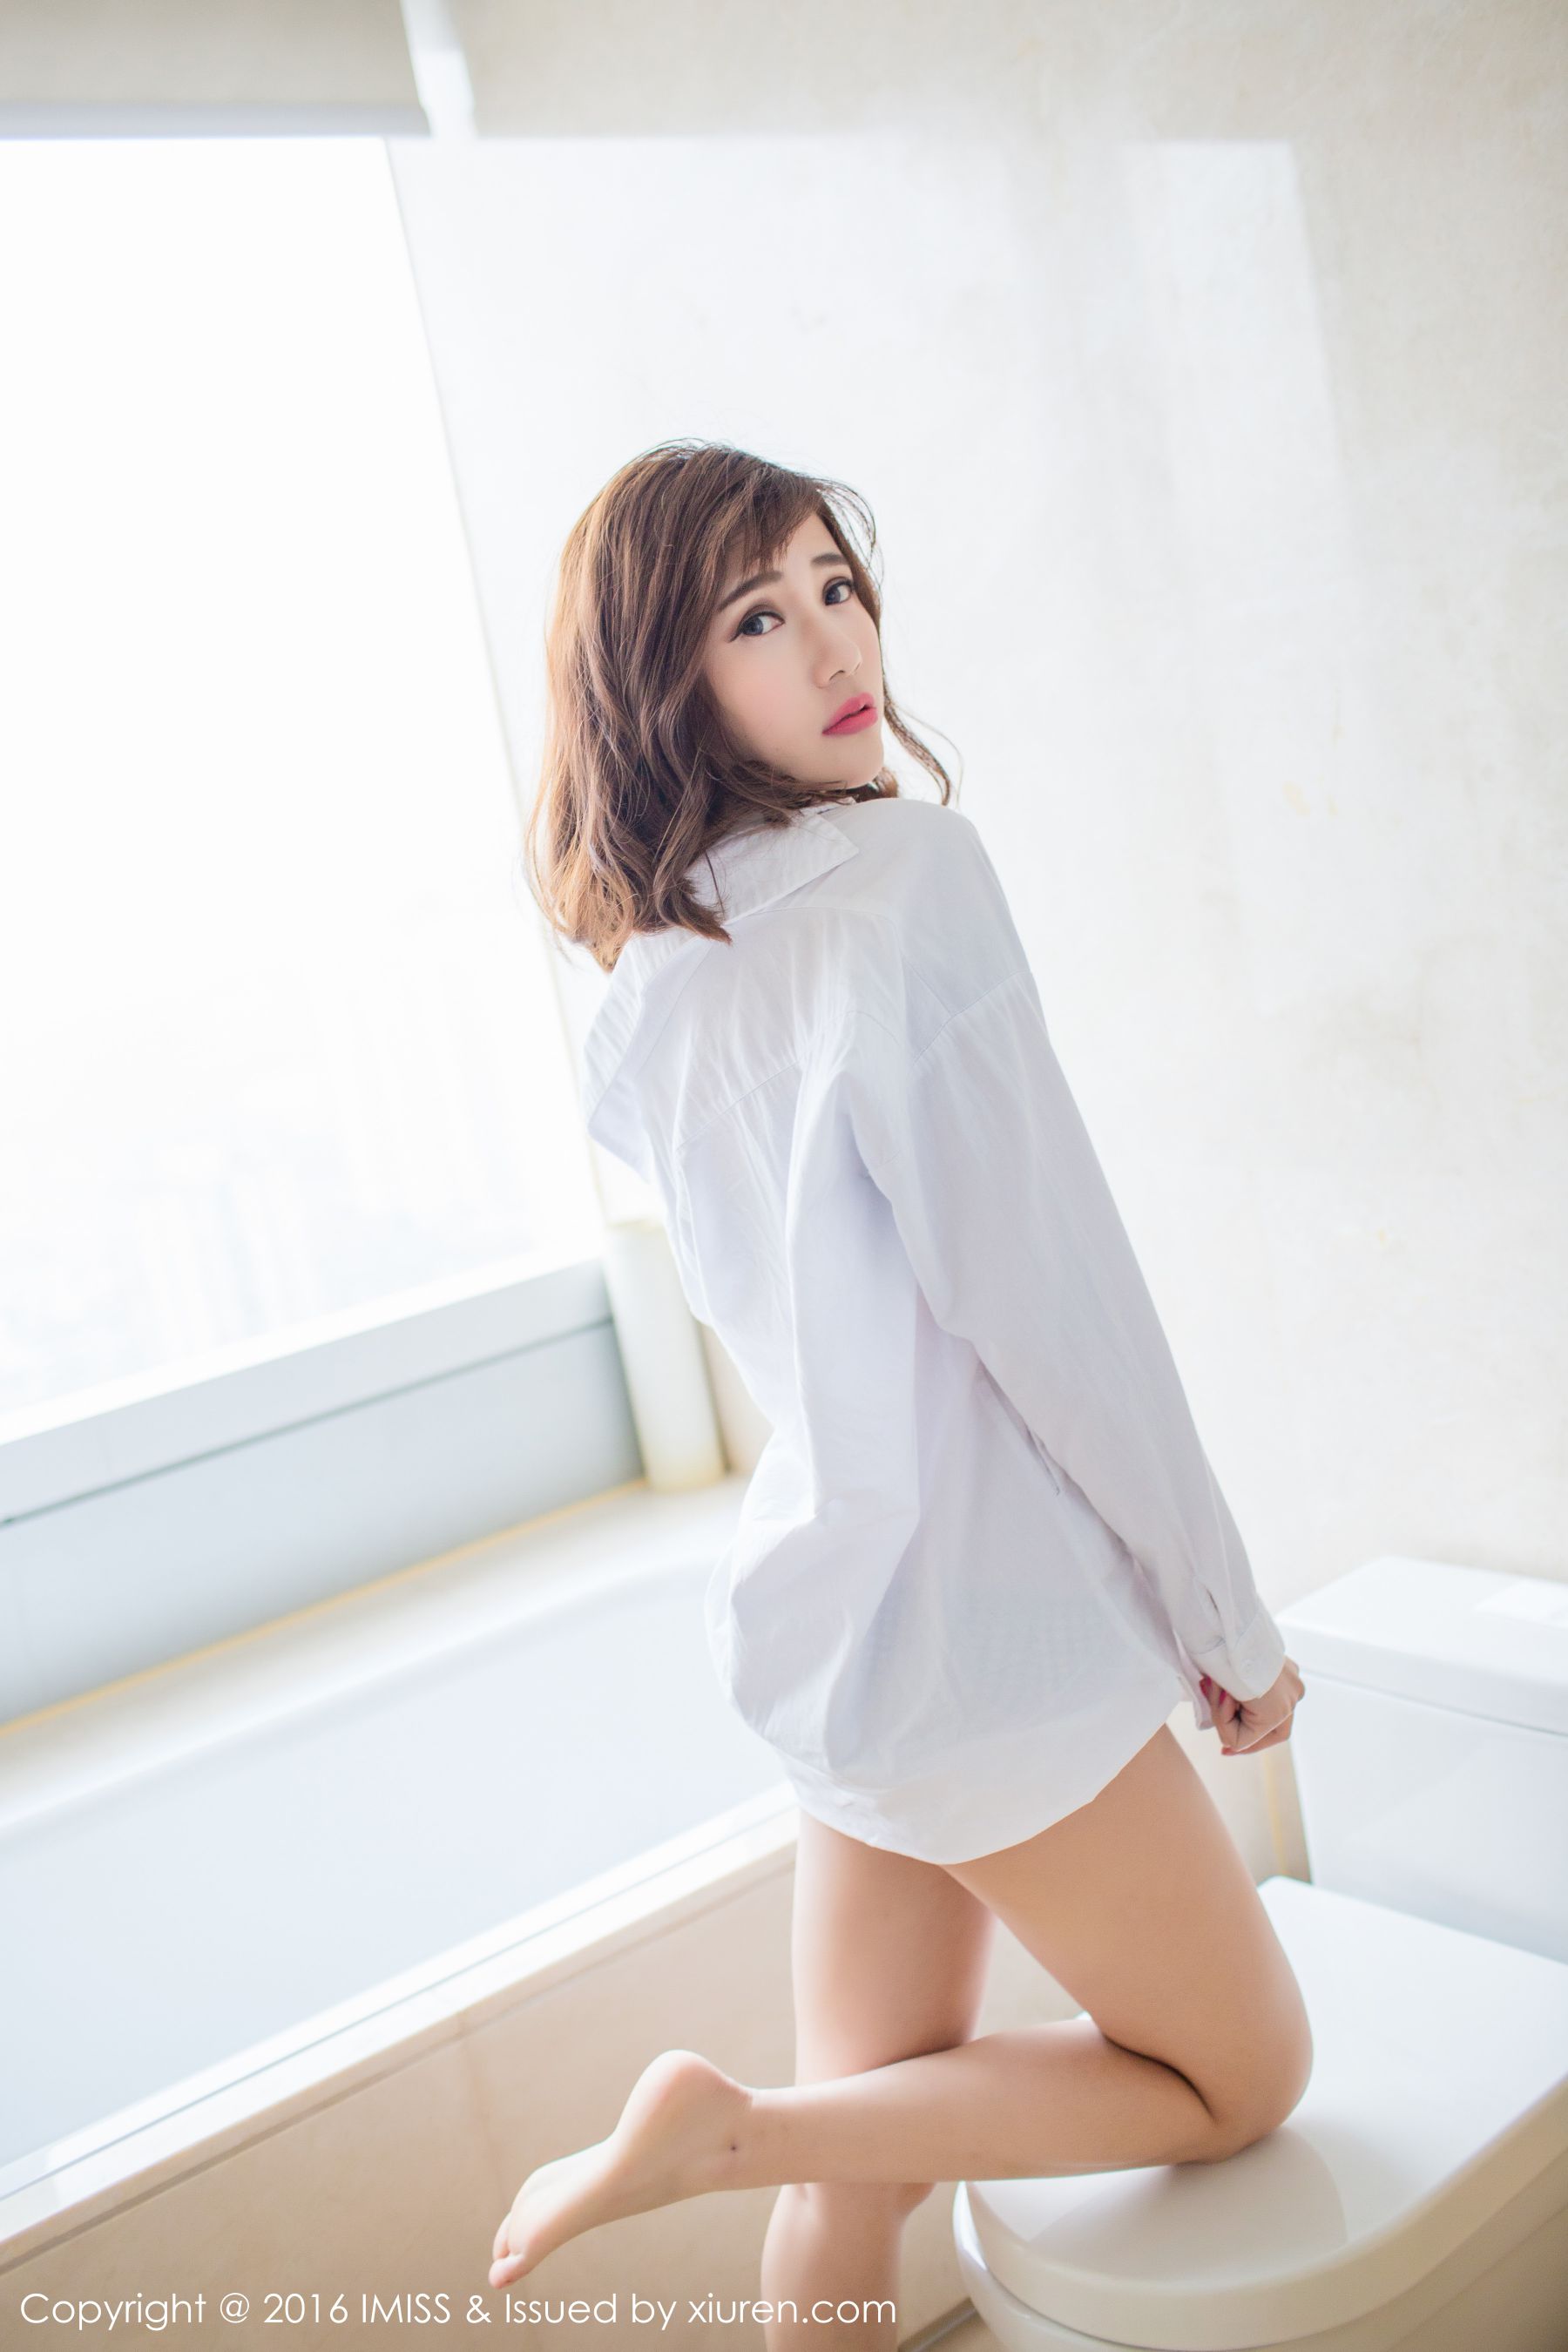 Sandy陈天扬《热裤+性感蕾丝+白衬衫》 [爱蜜社IMiss] Vol.072 